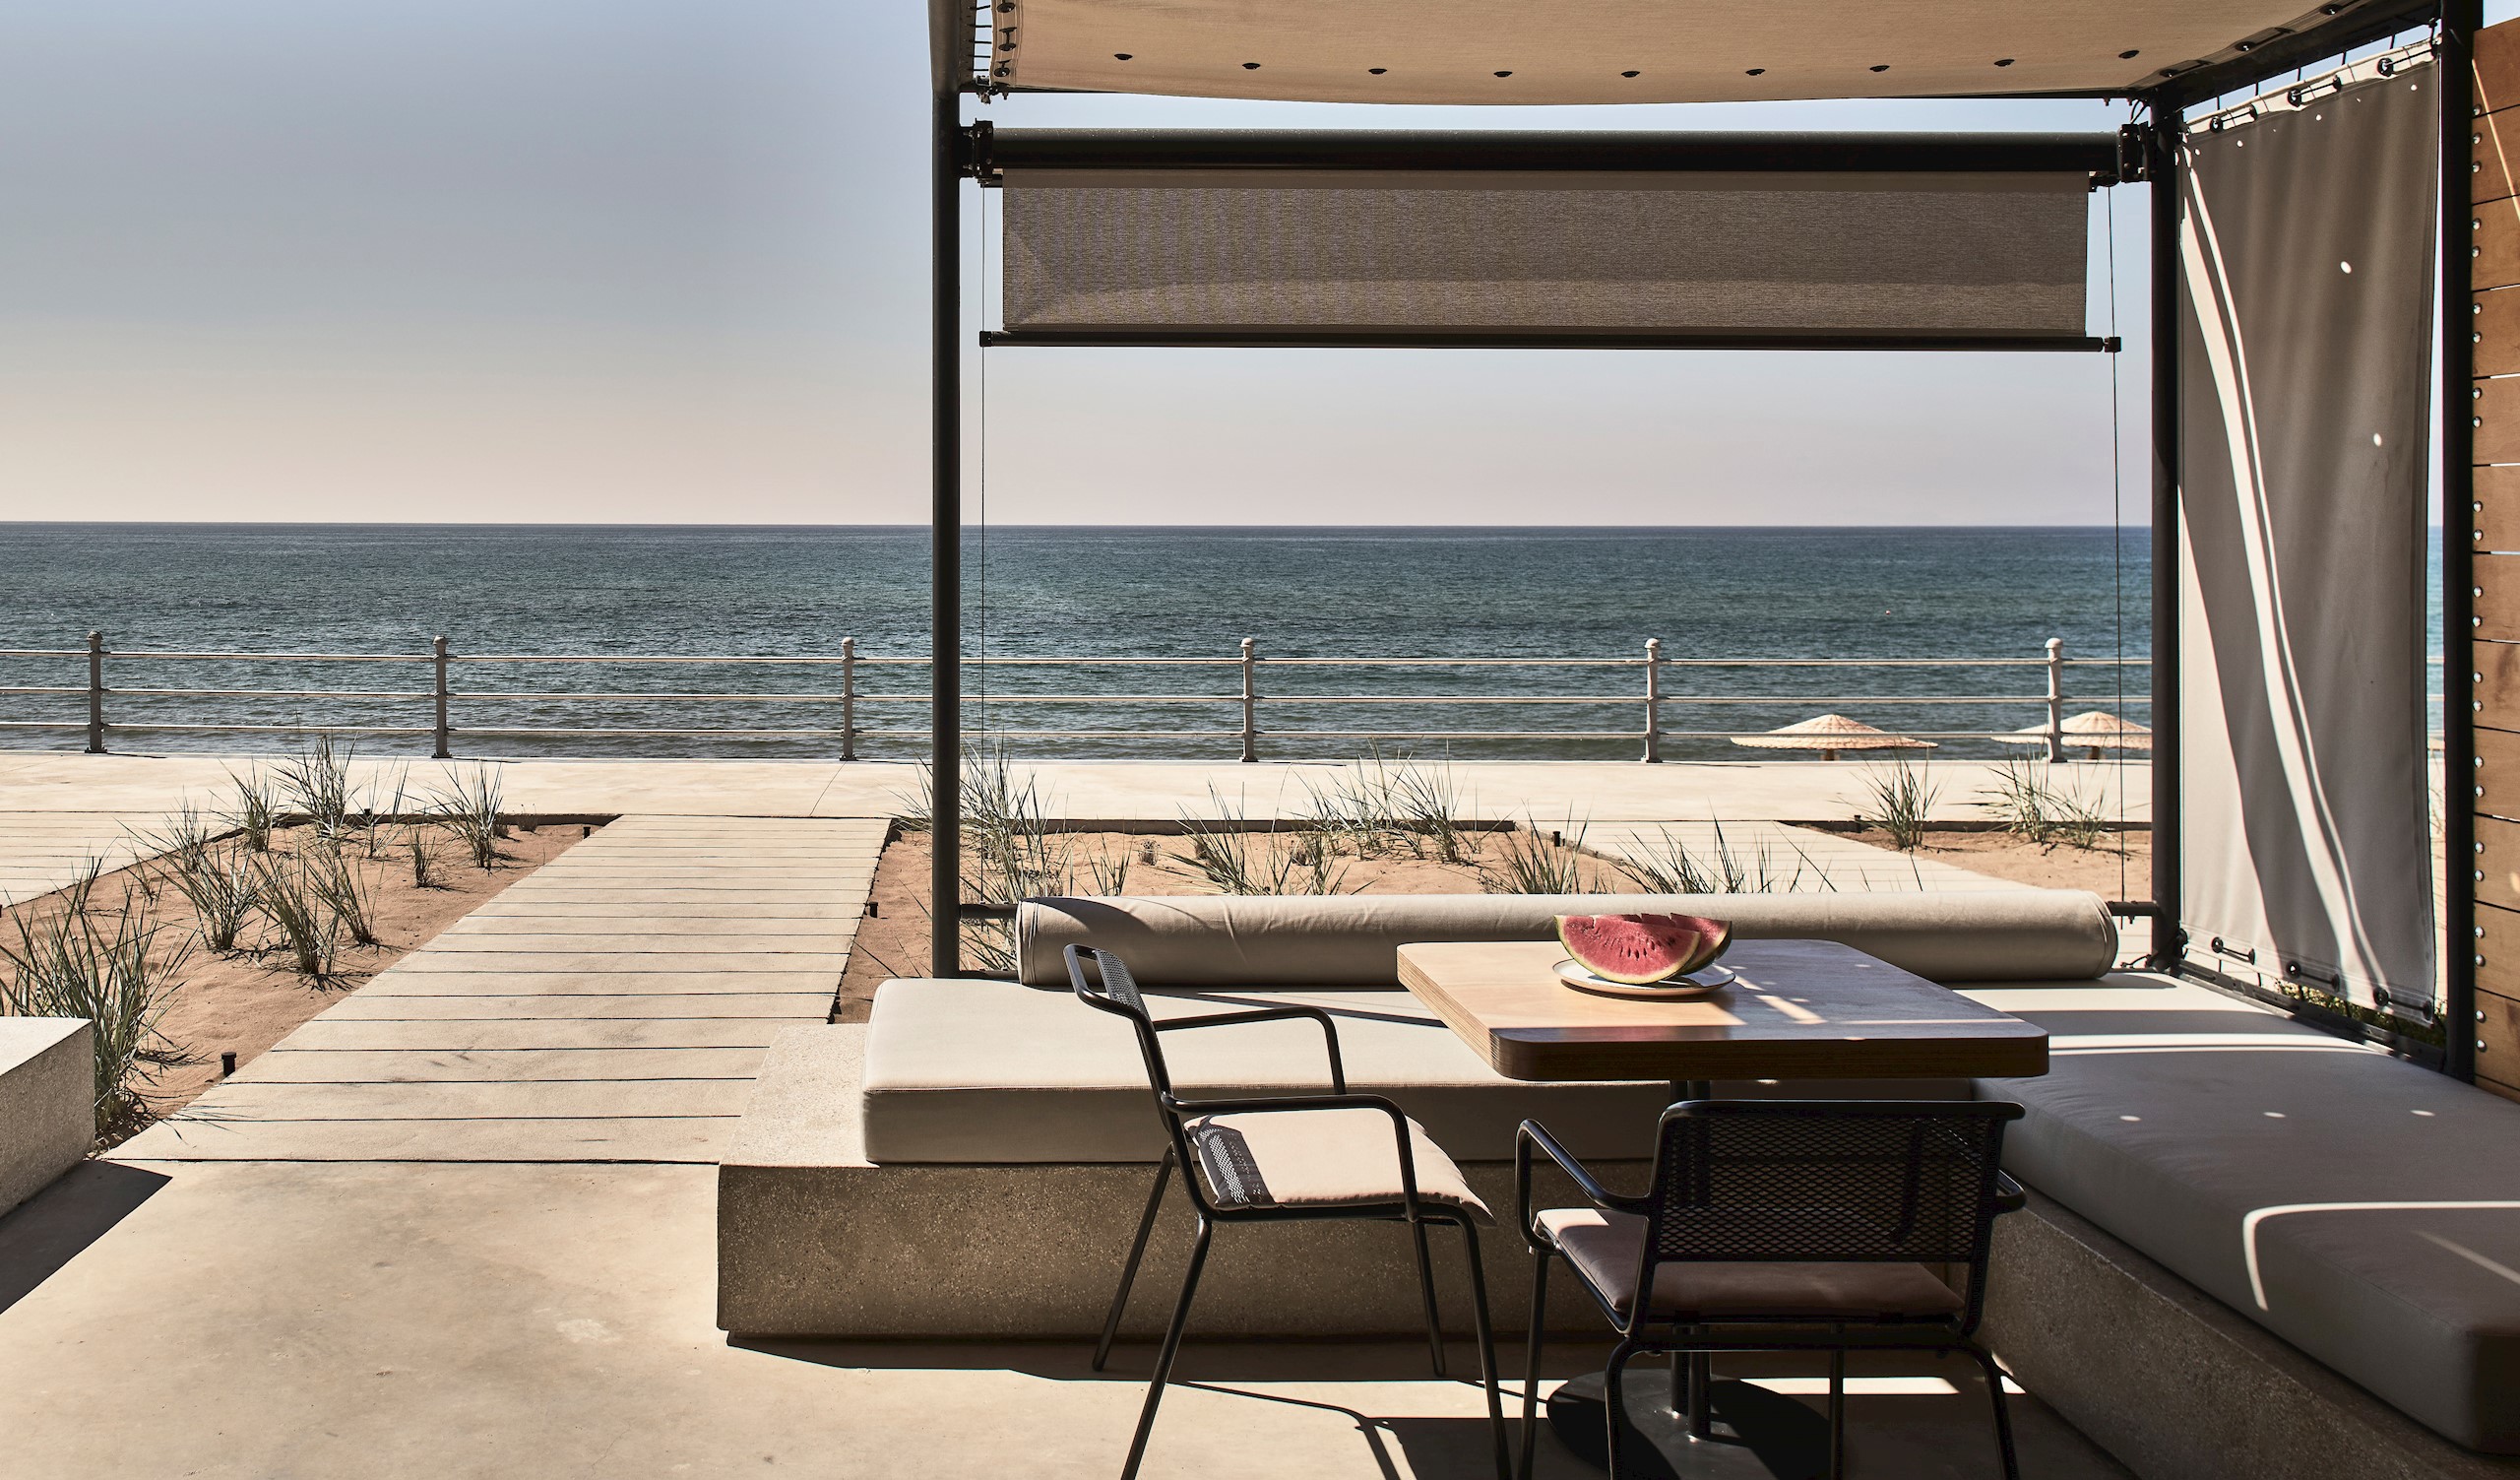 S Dexamenes Seaside Hotel Kourouta Greece